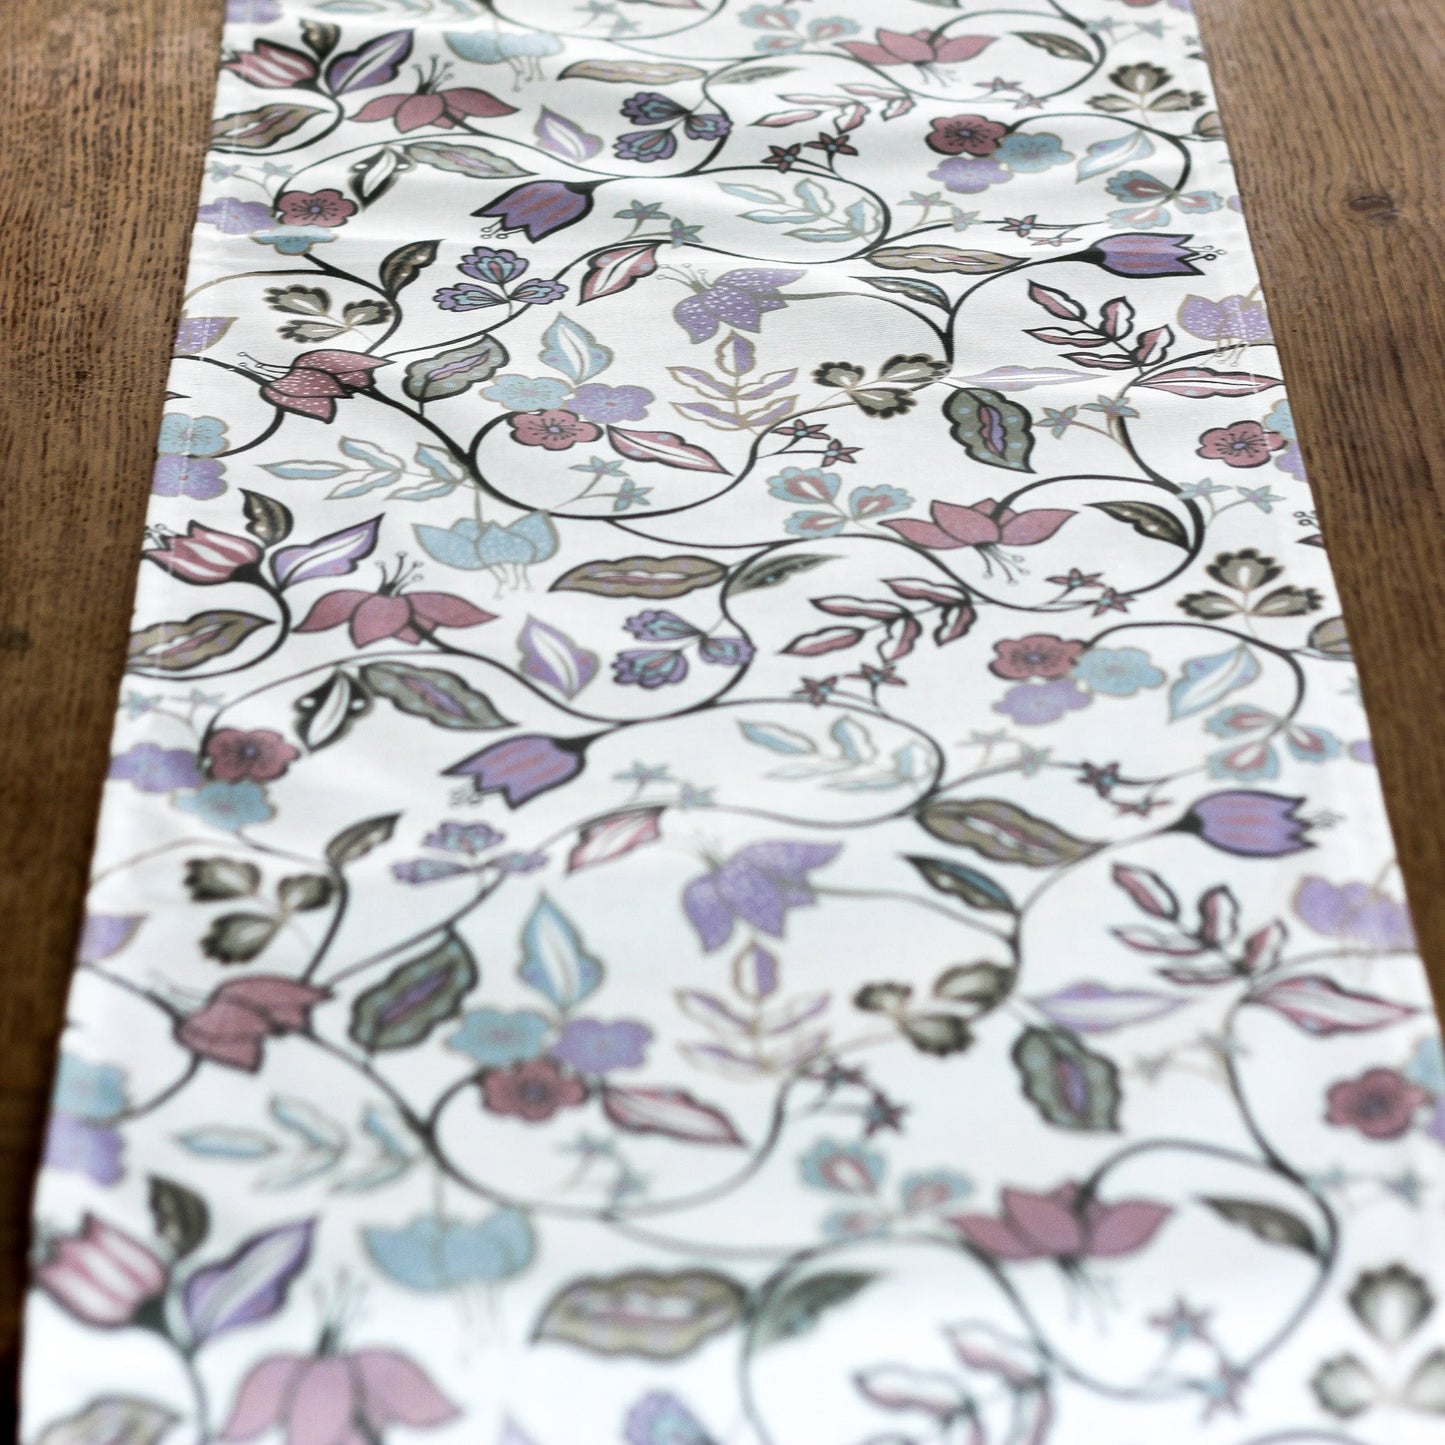 Vintage Floral Table Runner - Lavender